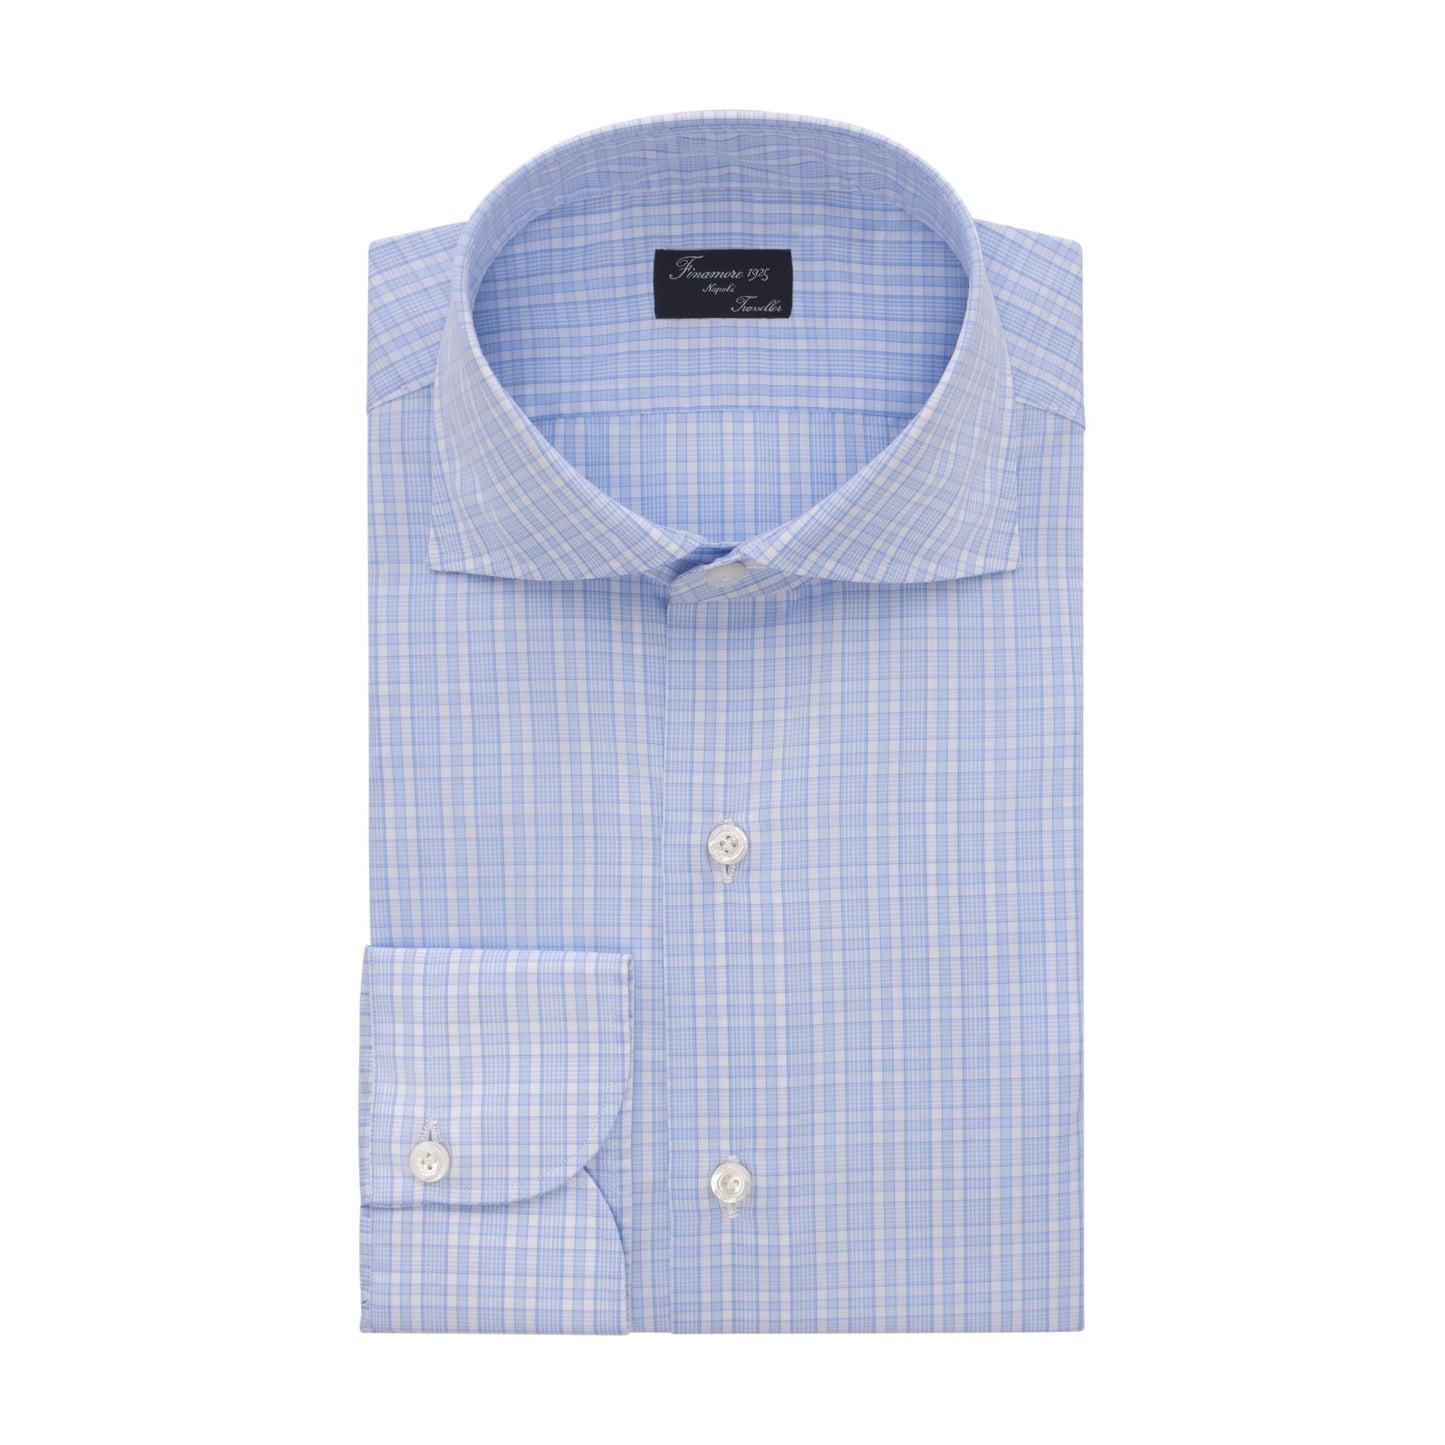 Finamore Check Cotton Classic Napoli Shirt in Light Blue - SARTALE